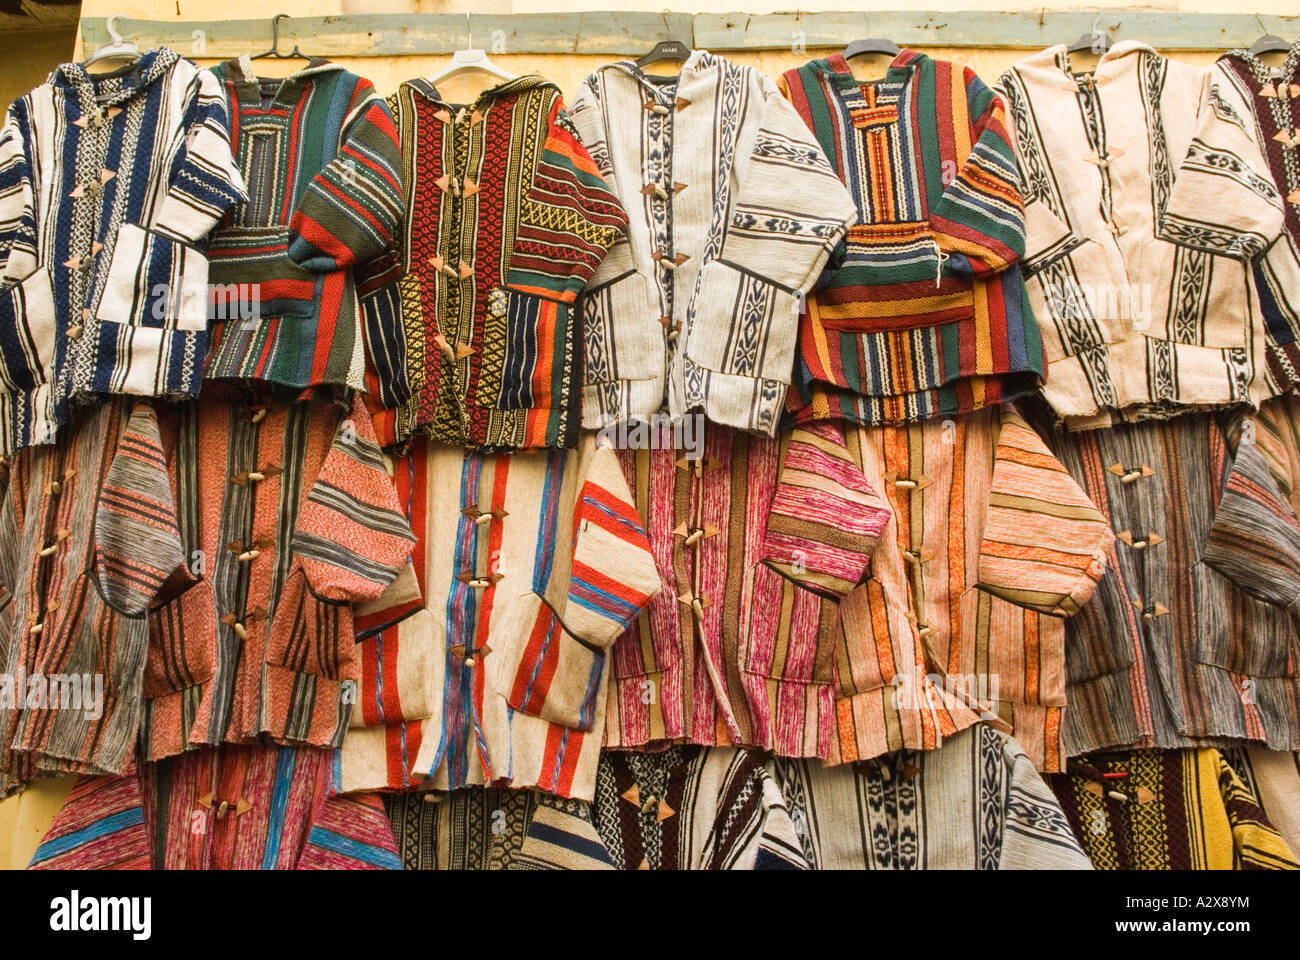 Fes el Bali Maroc Afrique du Nord veste colorée traditionnelle accrocher  sur le mur dans la Médina Photo Stock - Alamy